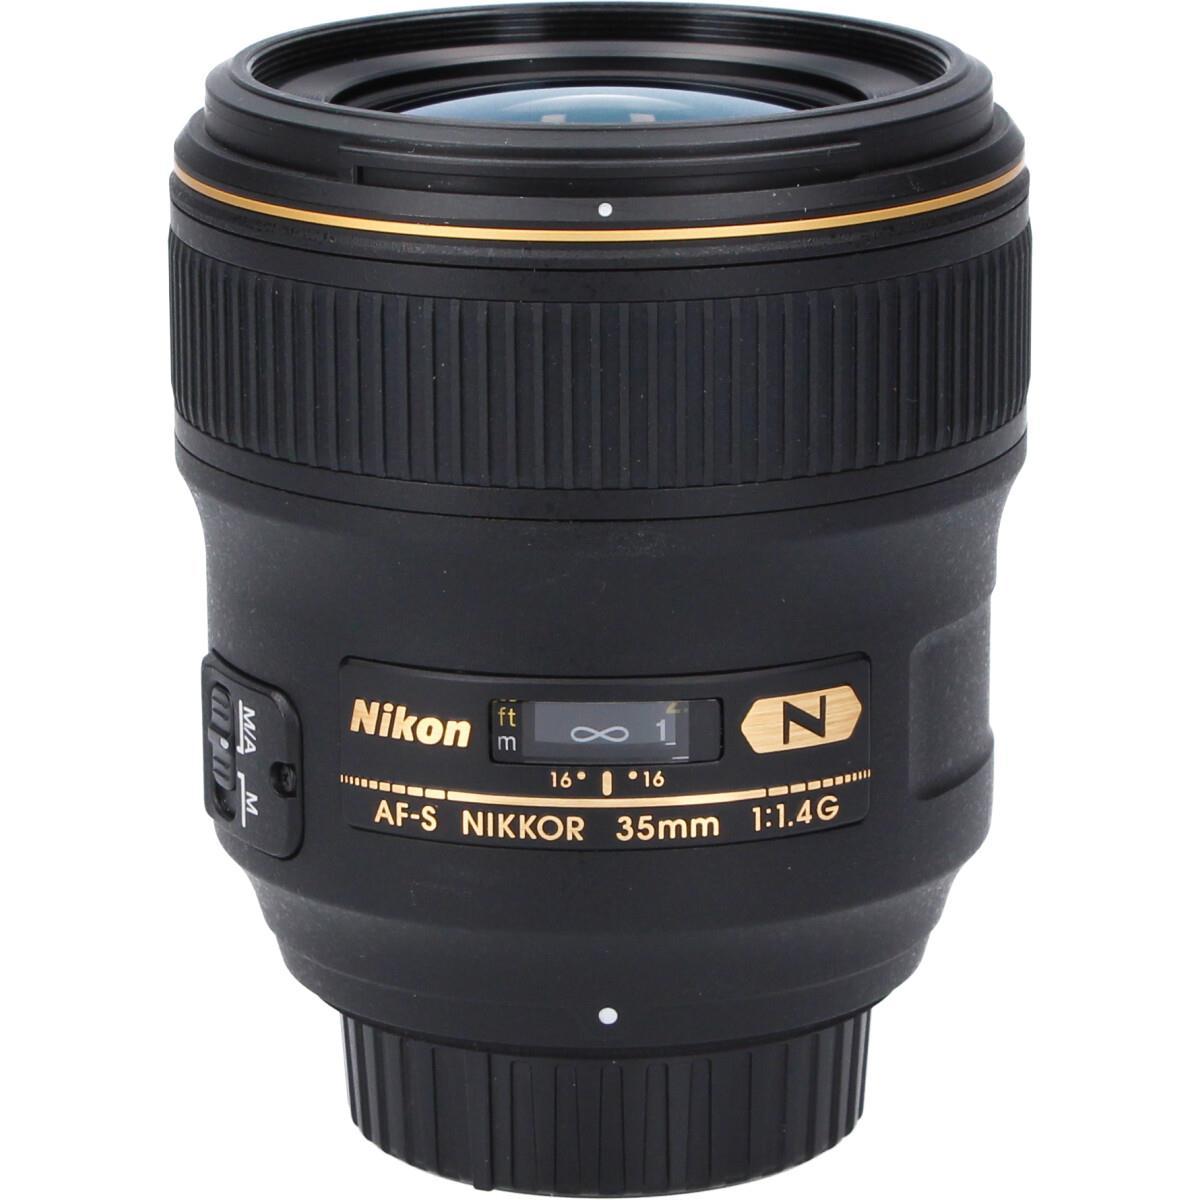 一部予約販売】 ニコン Nikon AF-S NIKKOR 35mm f1.4G 単焦点レンズ フルサイズ対応 一眼レフ カメラ 中古